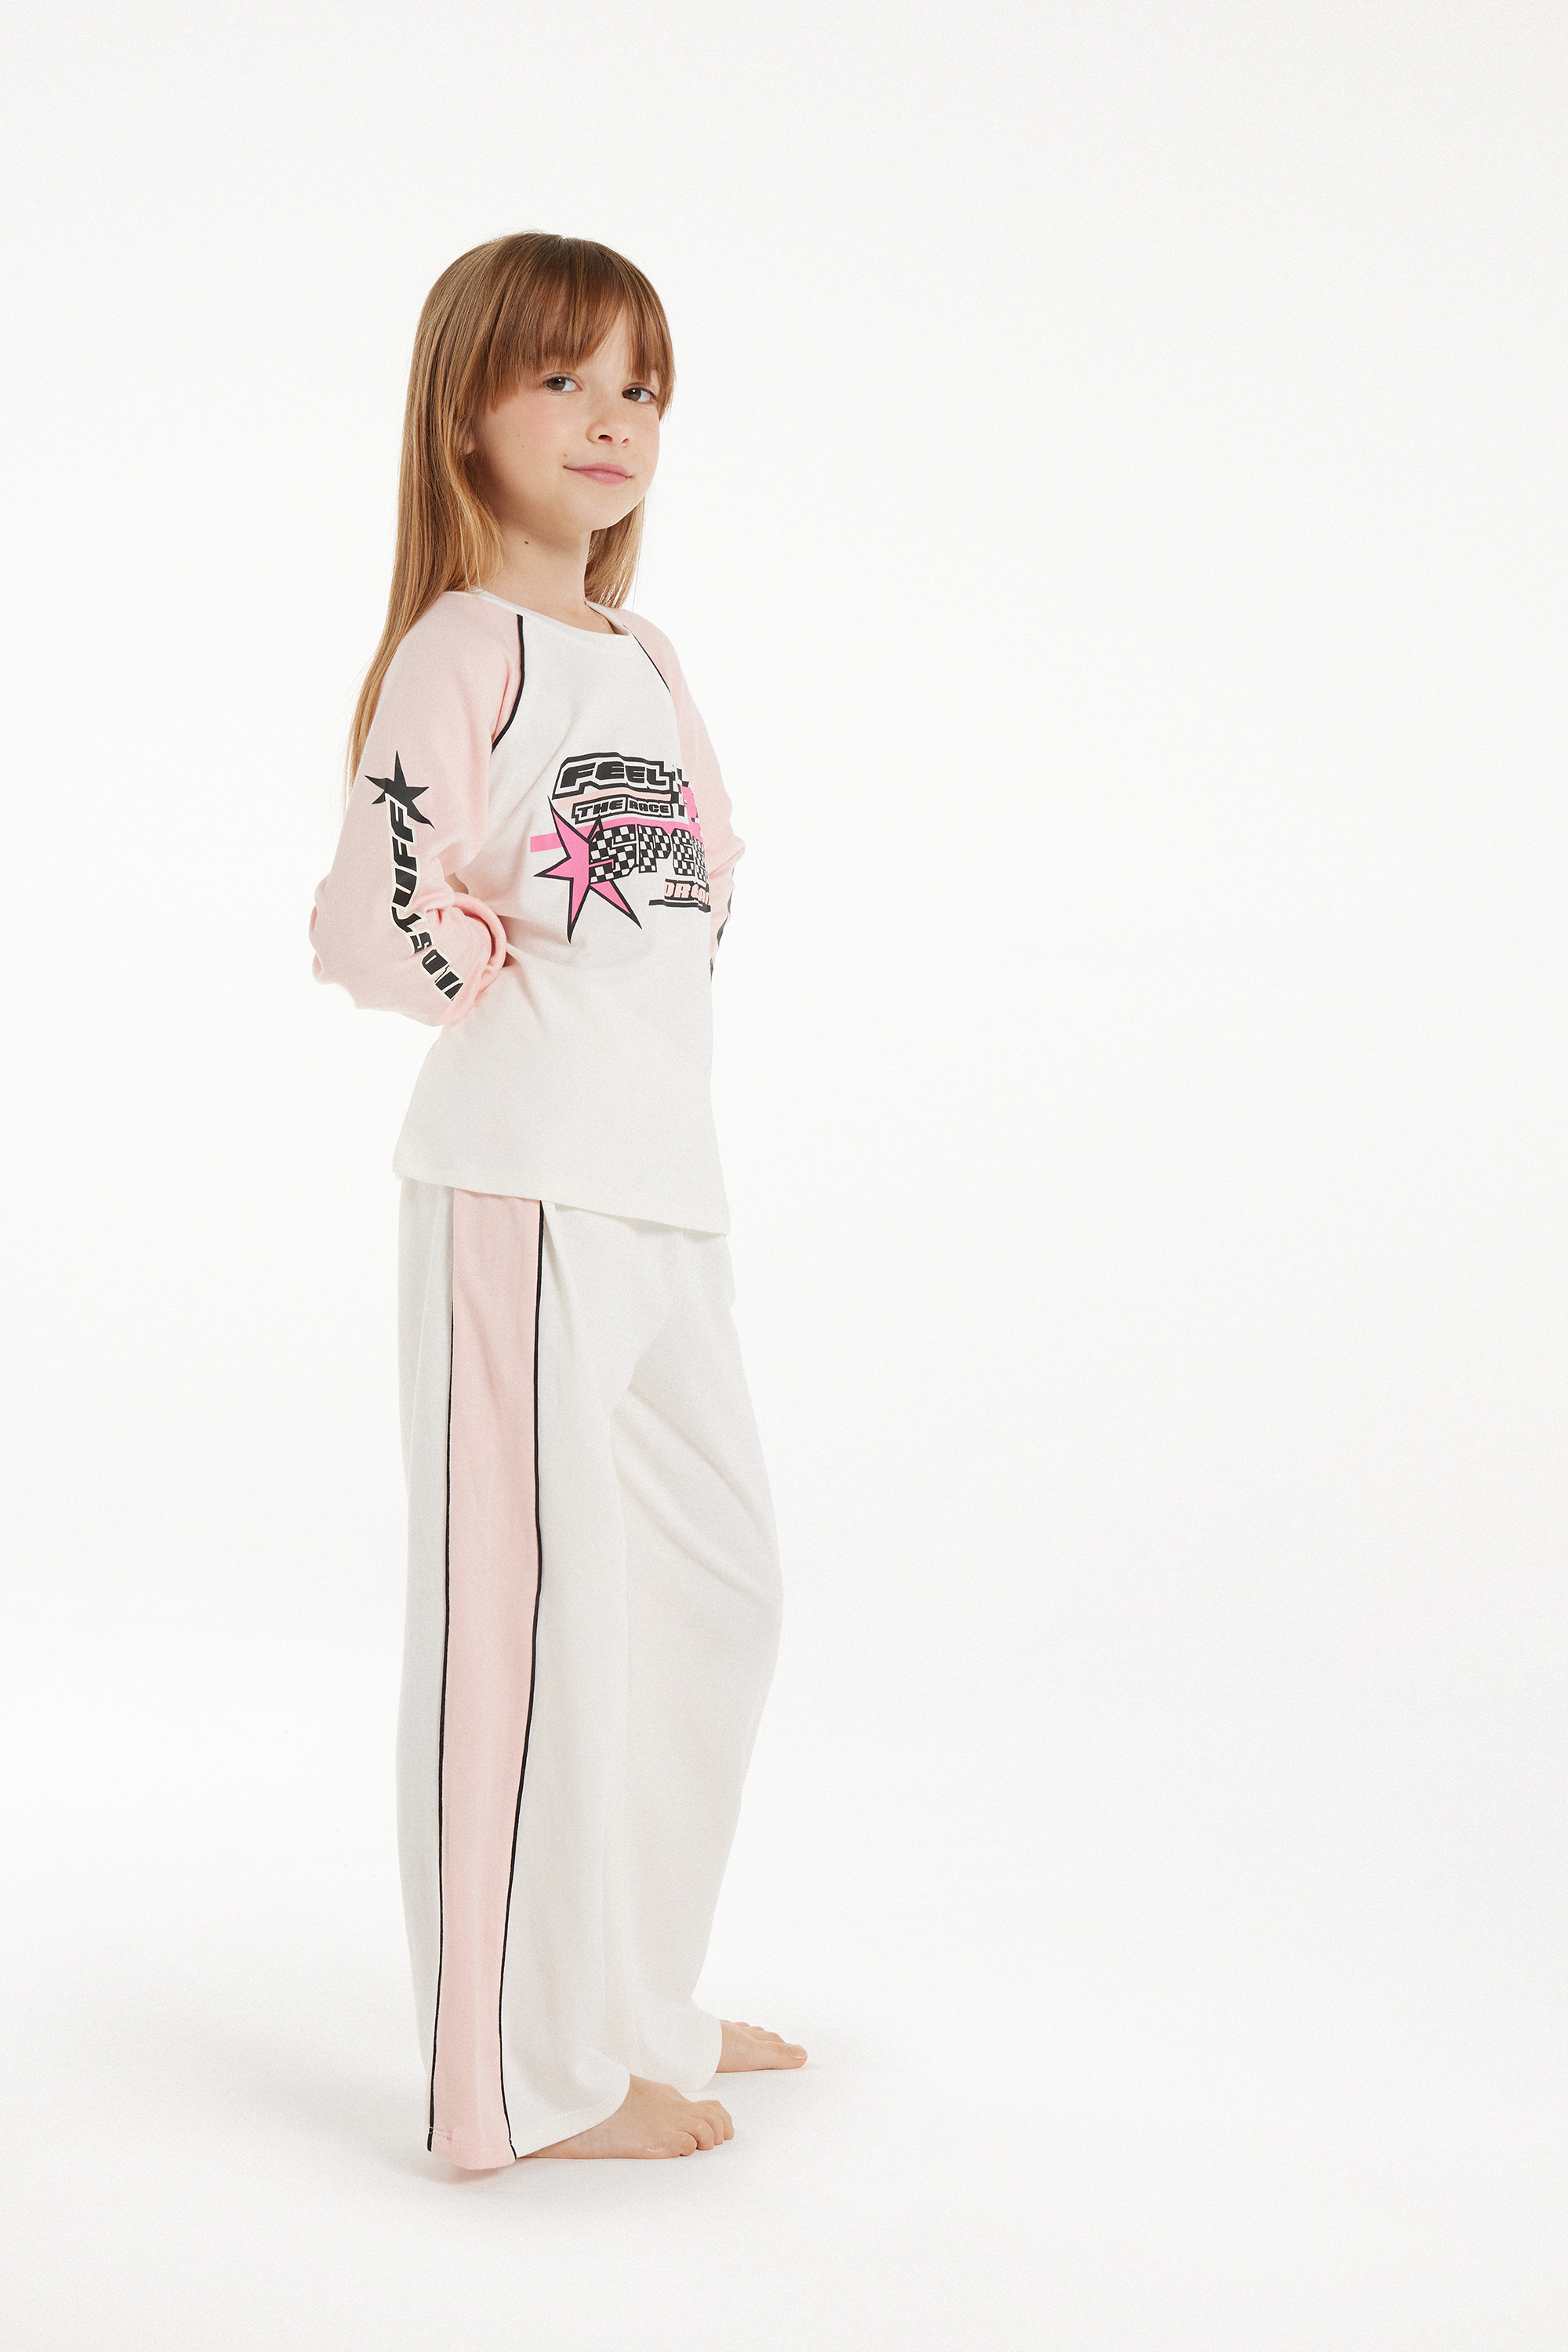 Girls’ Long Cotton "Race" Print Pyjamas